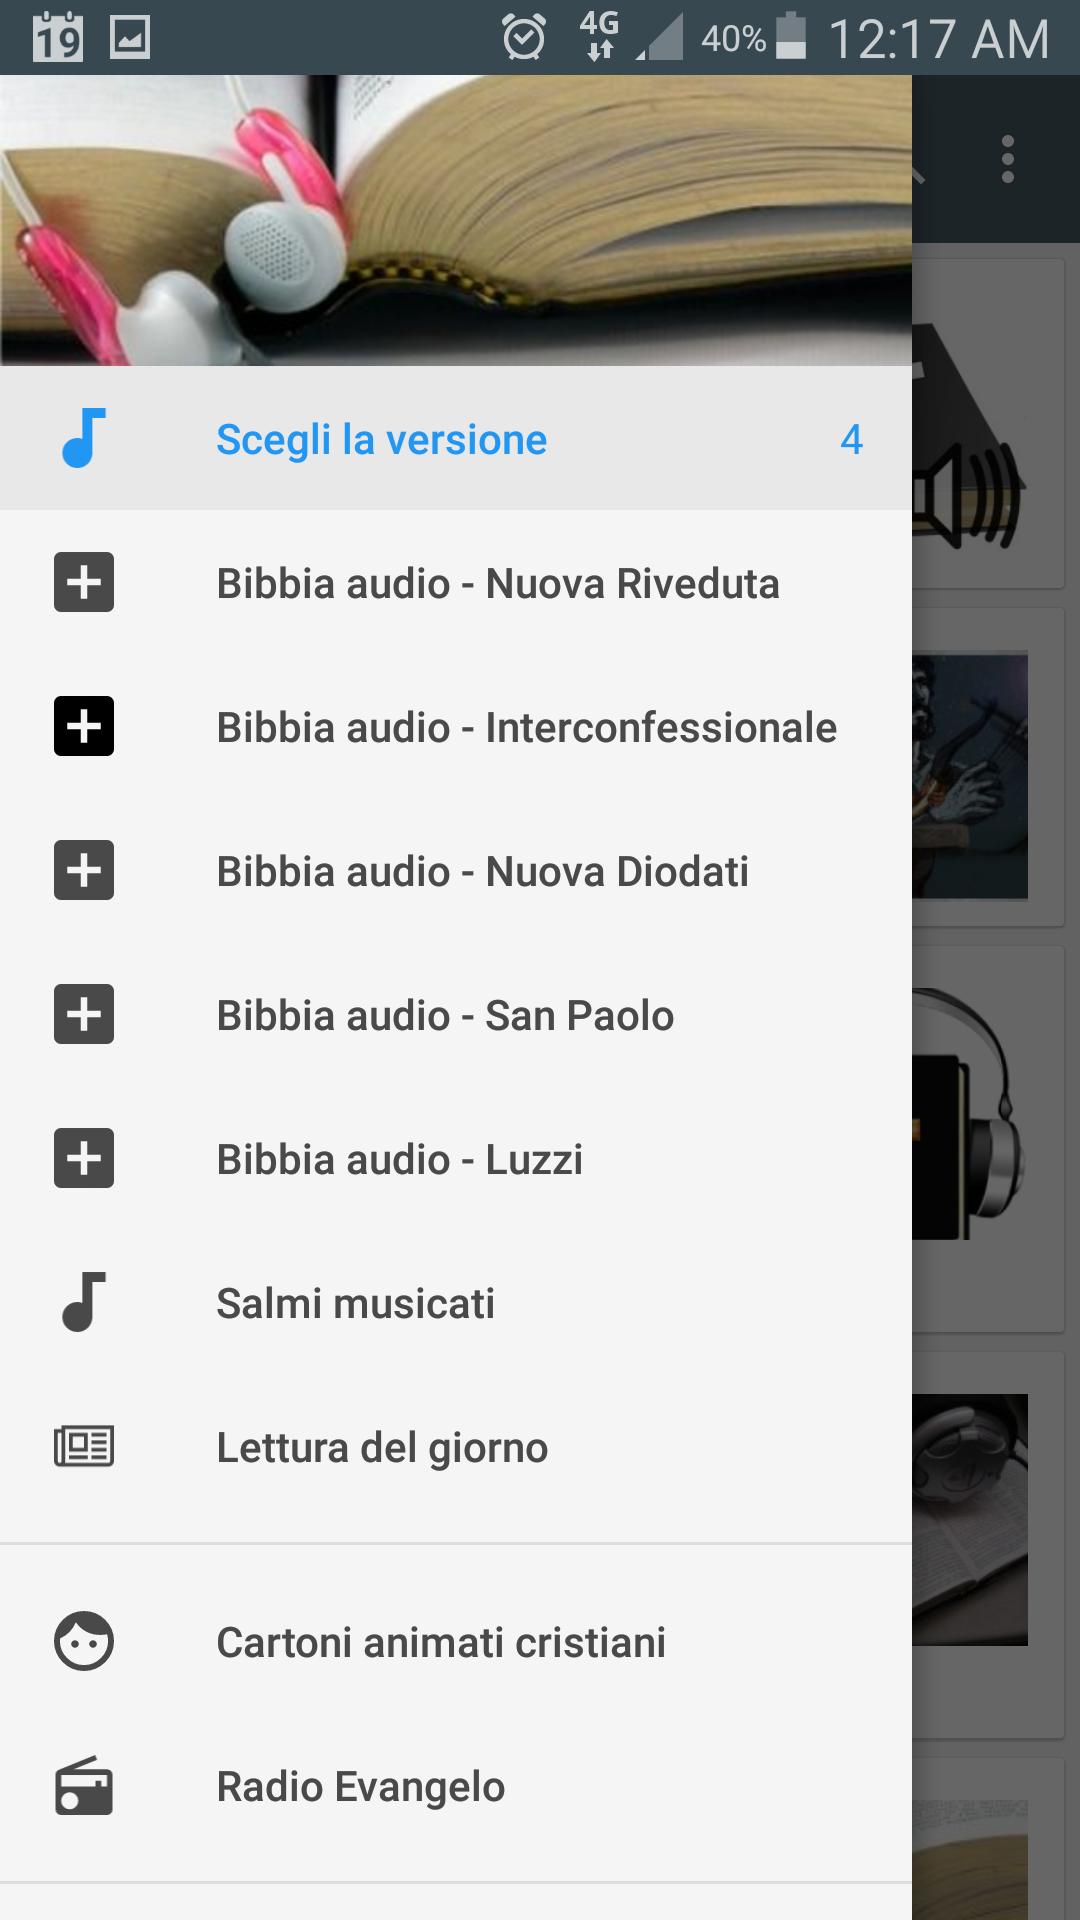 Audio Bibbia - Audiolibro della Sacra Scrittura for Android - APK Download